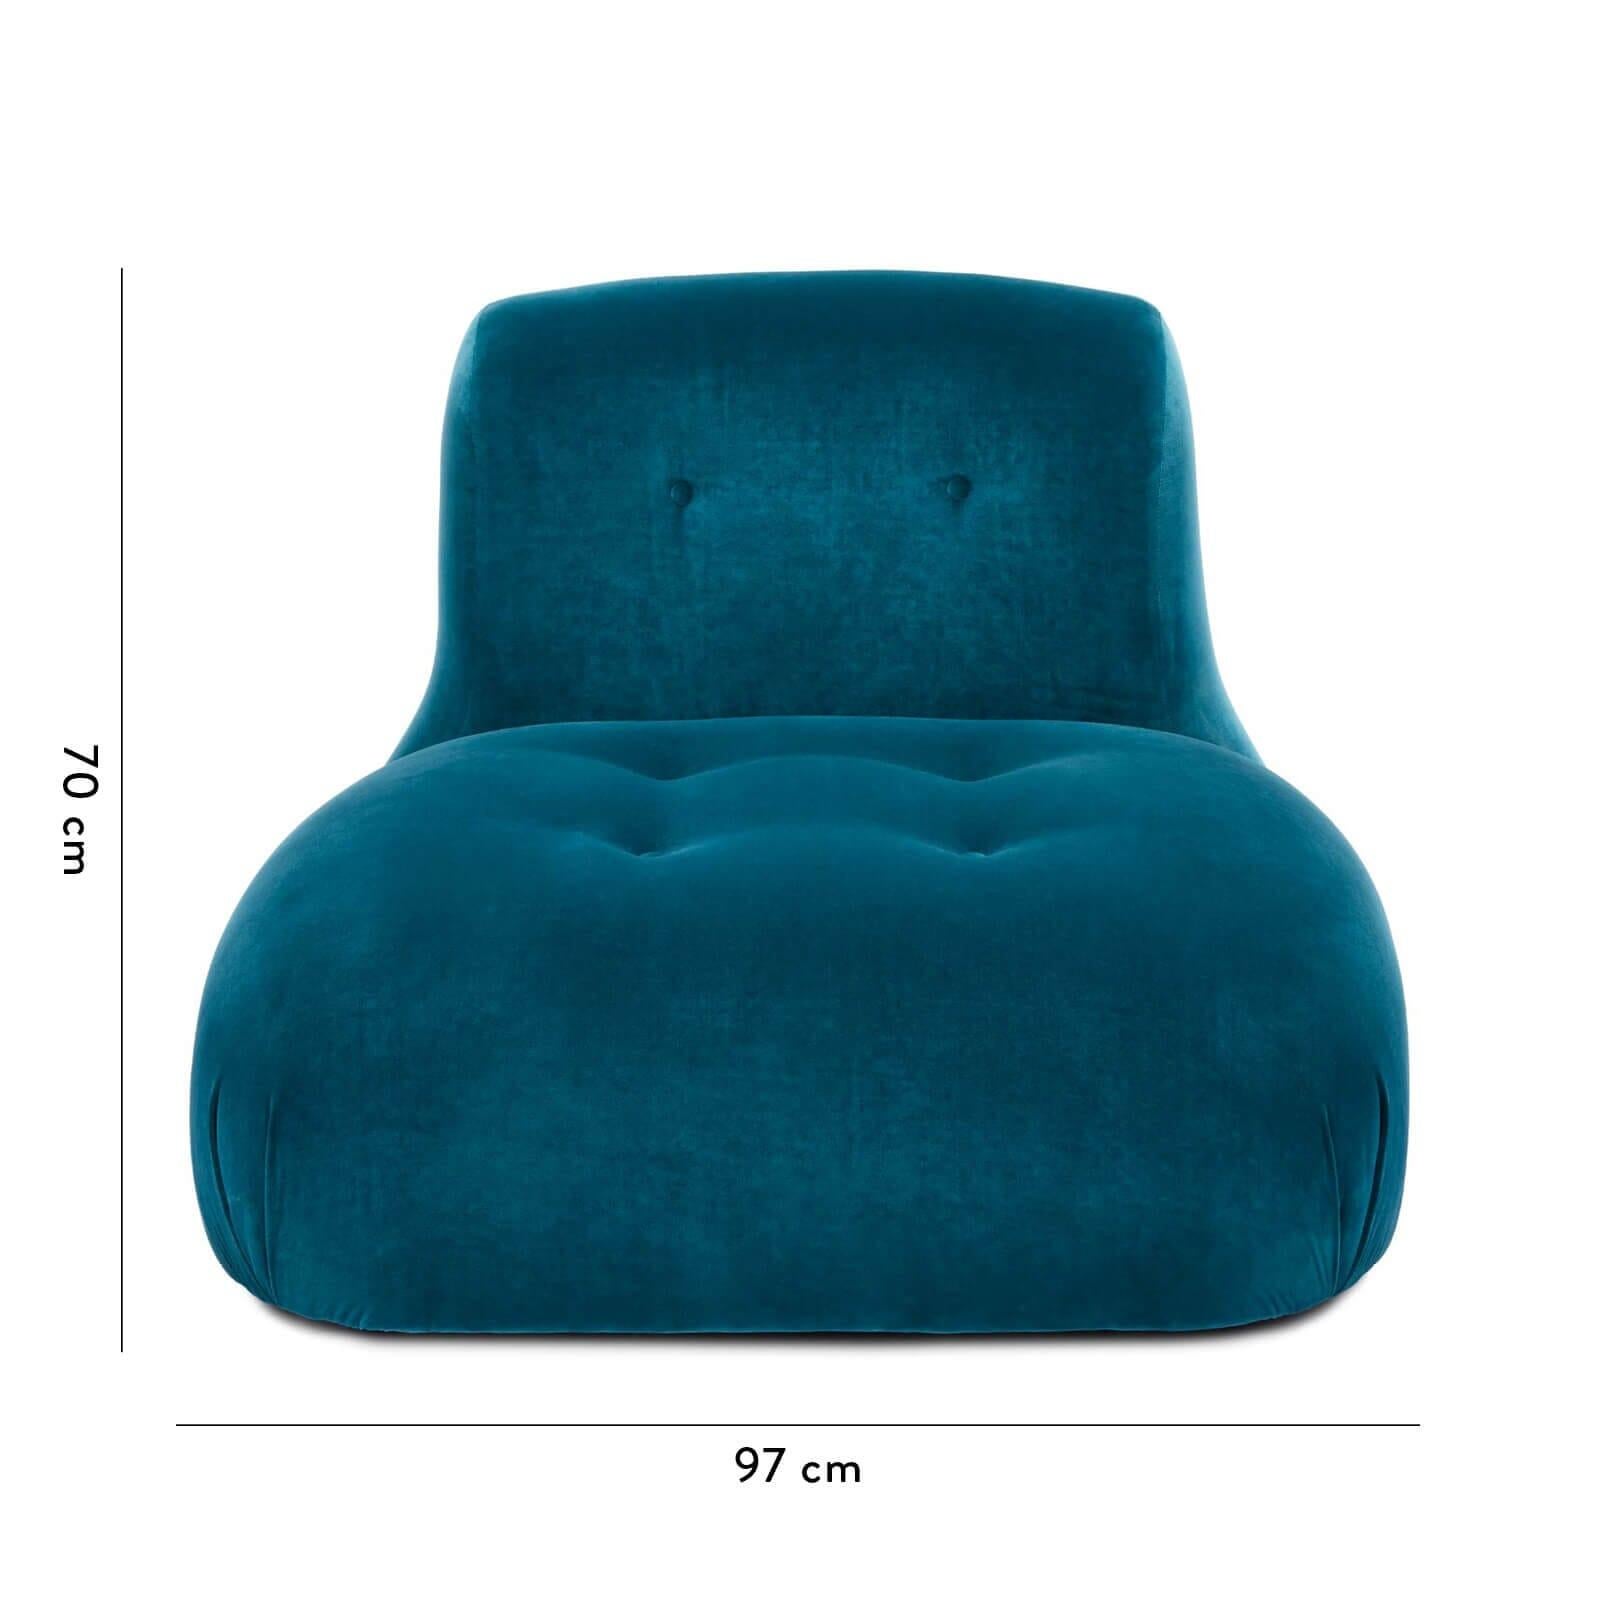 S'inspirant des canapés modulaires du mouvement moderniste des années 1960, la chaise Castle est l'incarnation même du style décontracté. Sa forme basse crée une ambiance instantanément détendue pour les salles de cinéma, les salles de lecture ou